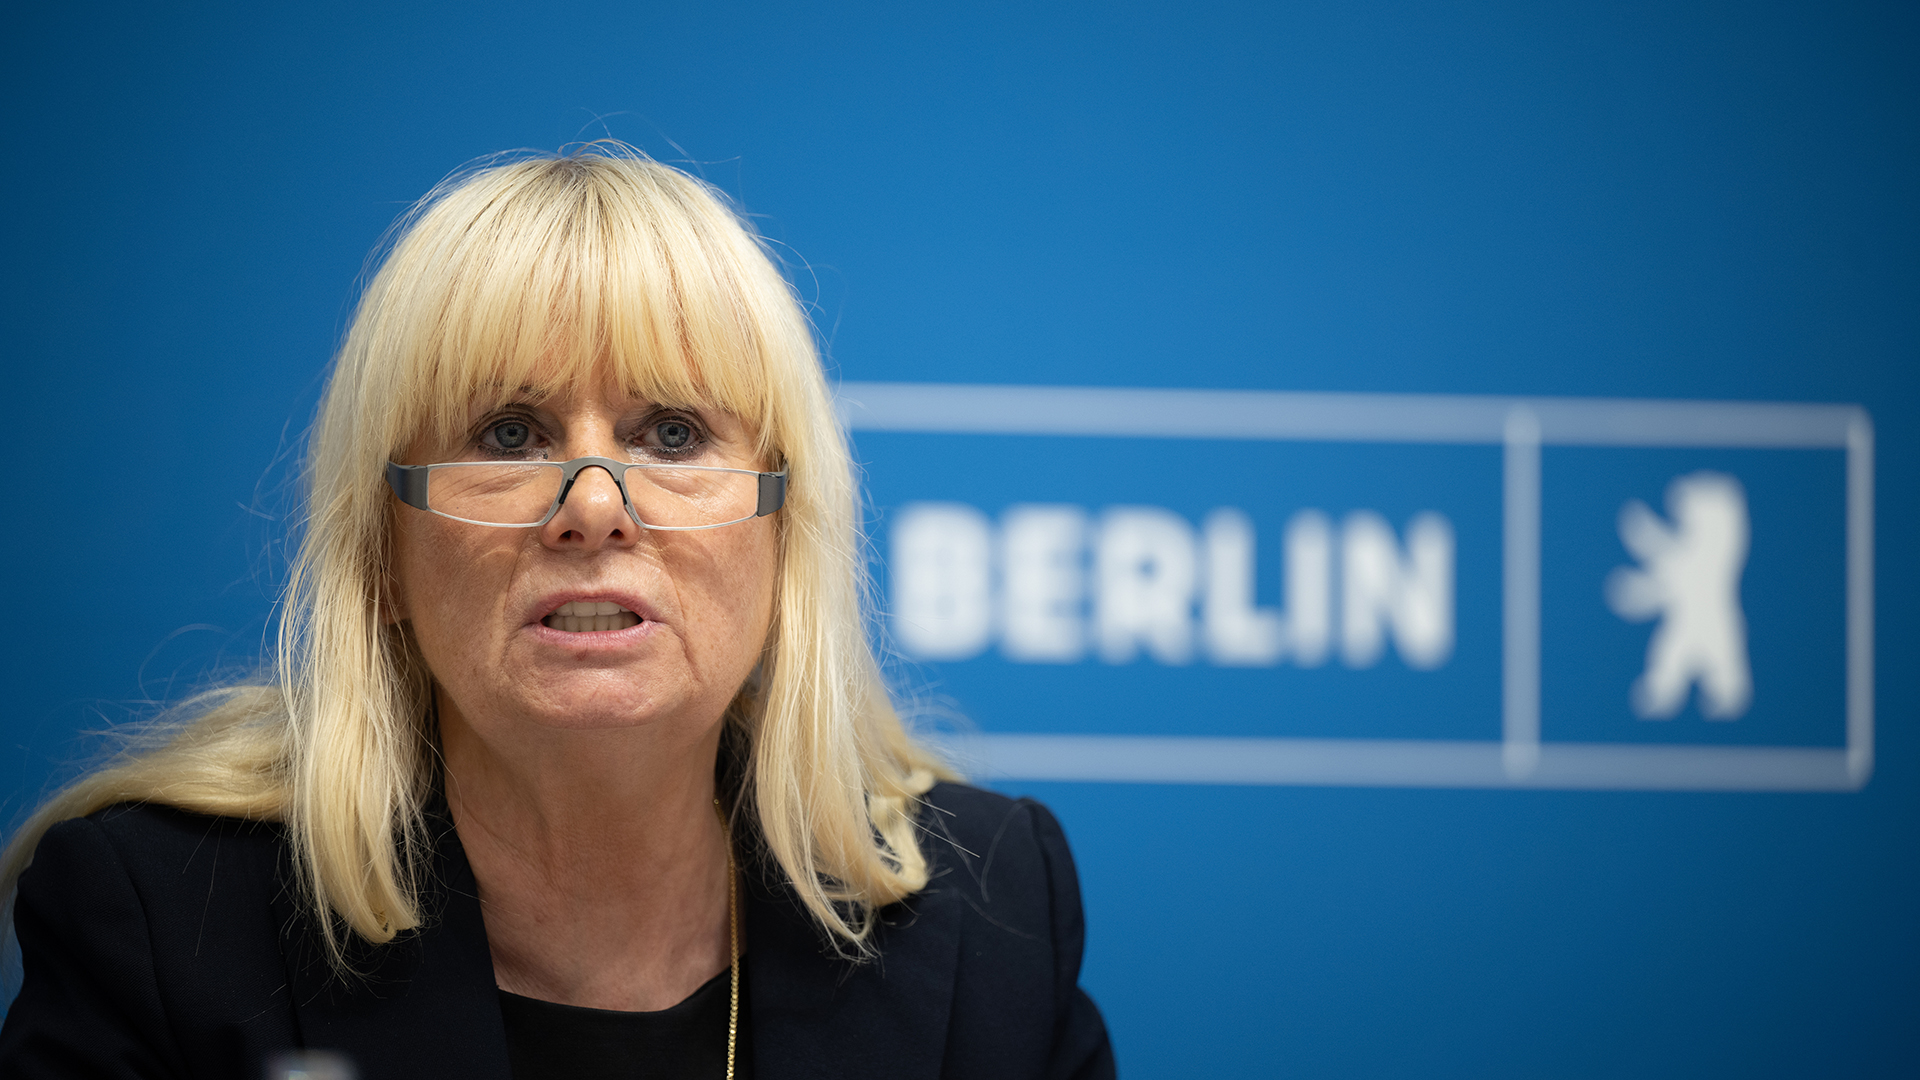 Iris Spranger, Berliner Senatorin für Inneres und Sport, spricht während einer Pressekonferenz (Quelle: dpa/Sebastian Gollnow).